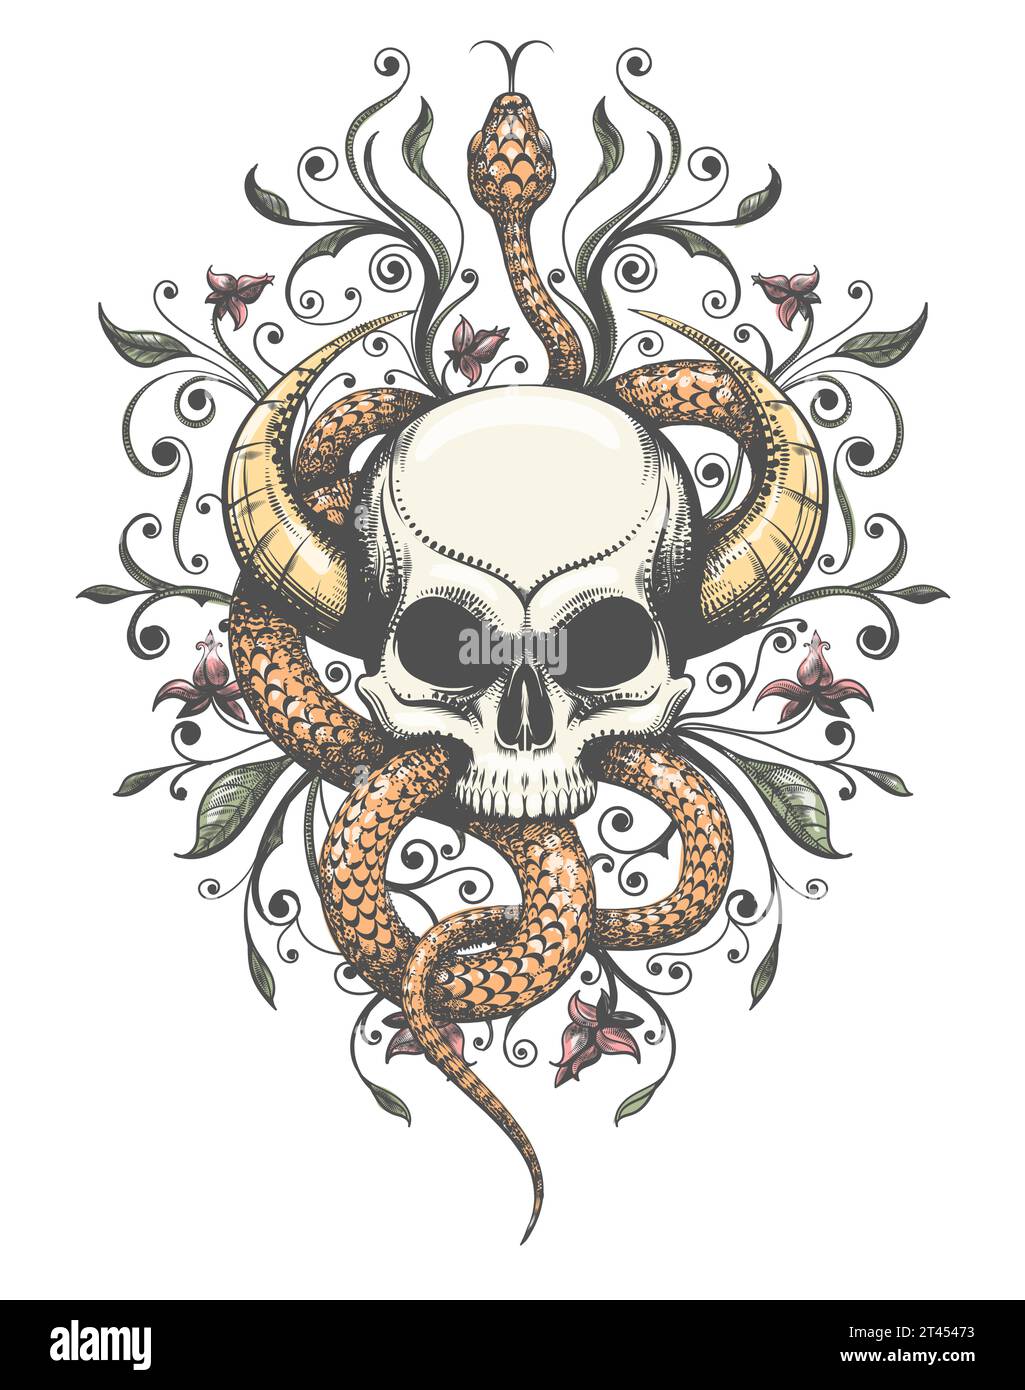 Crâne à cornes avec tatouage de serpent et de fleurs dans le style de gravure isolé sur illustration vectorielle blanche Illustration de Vecteur